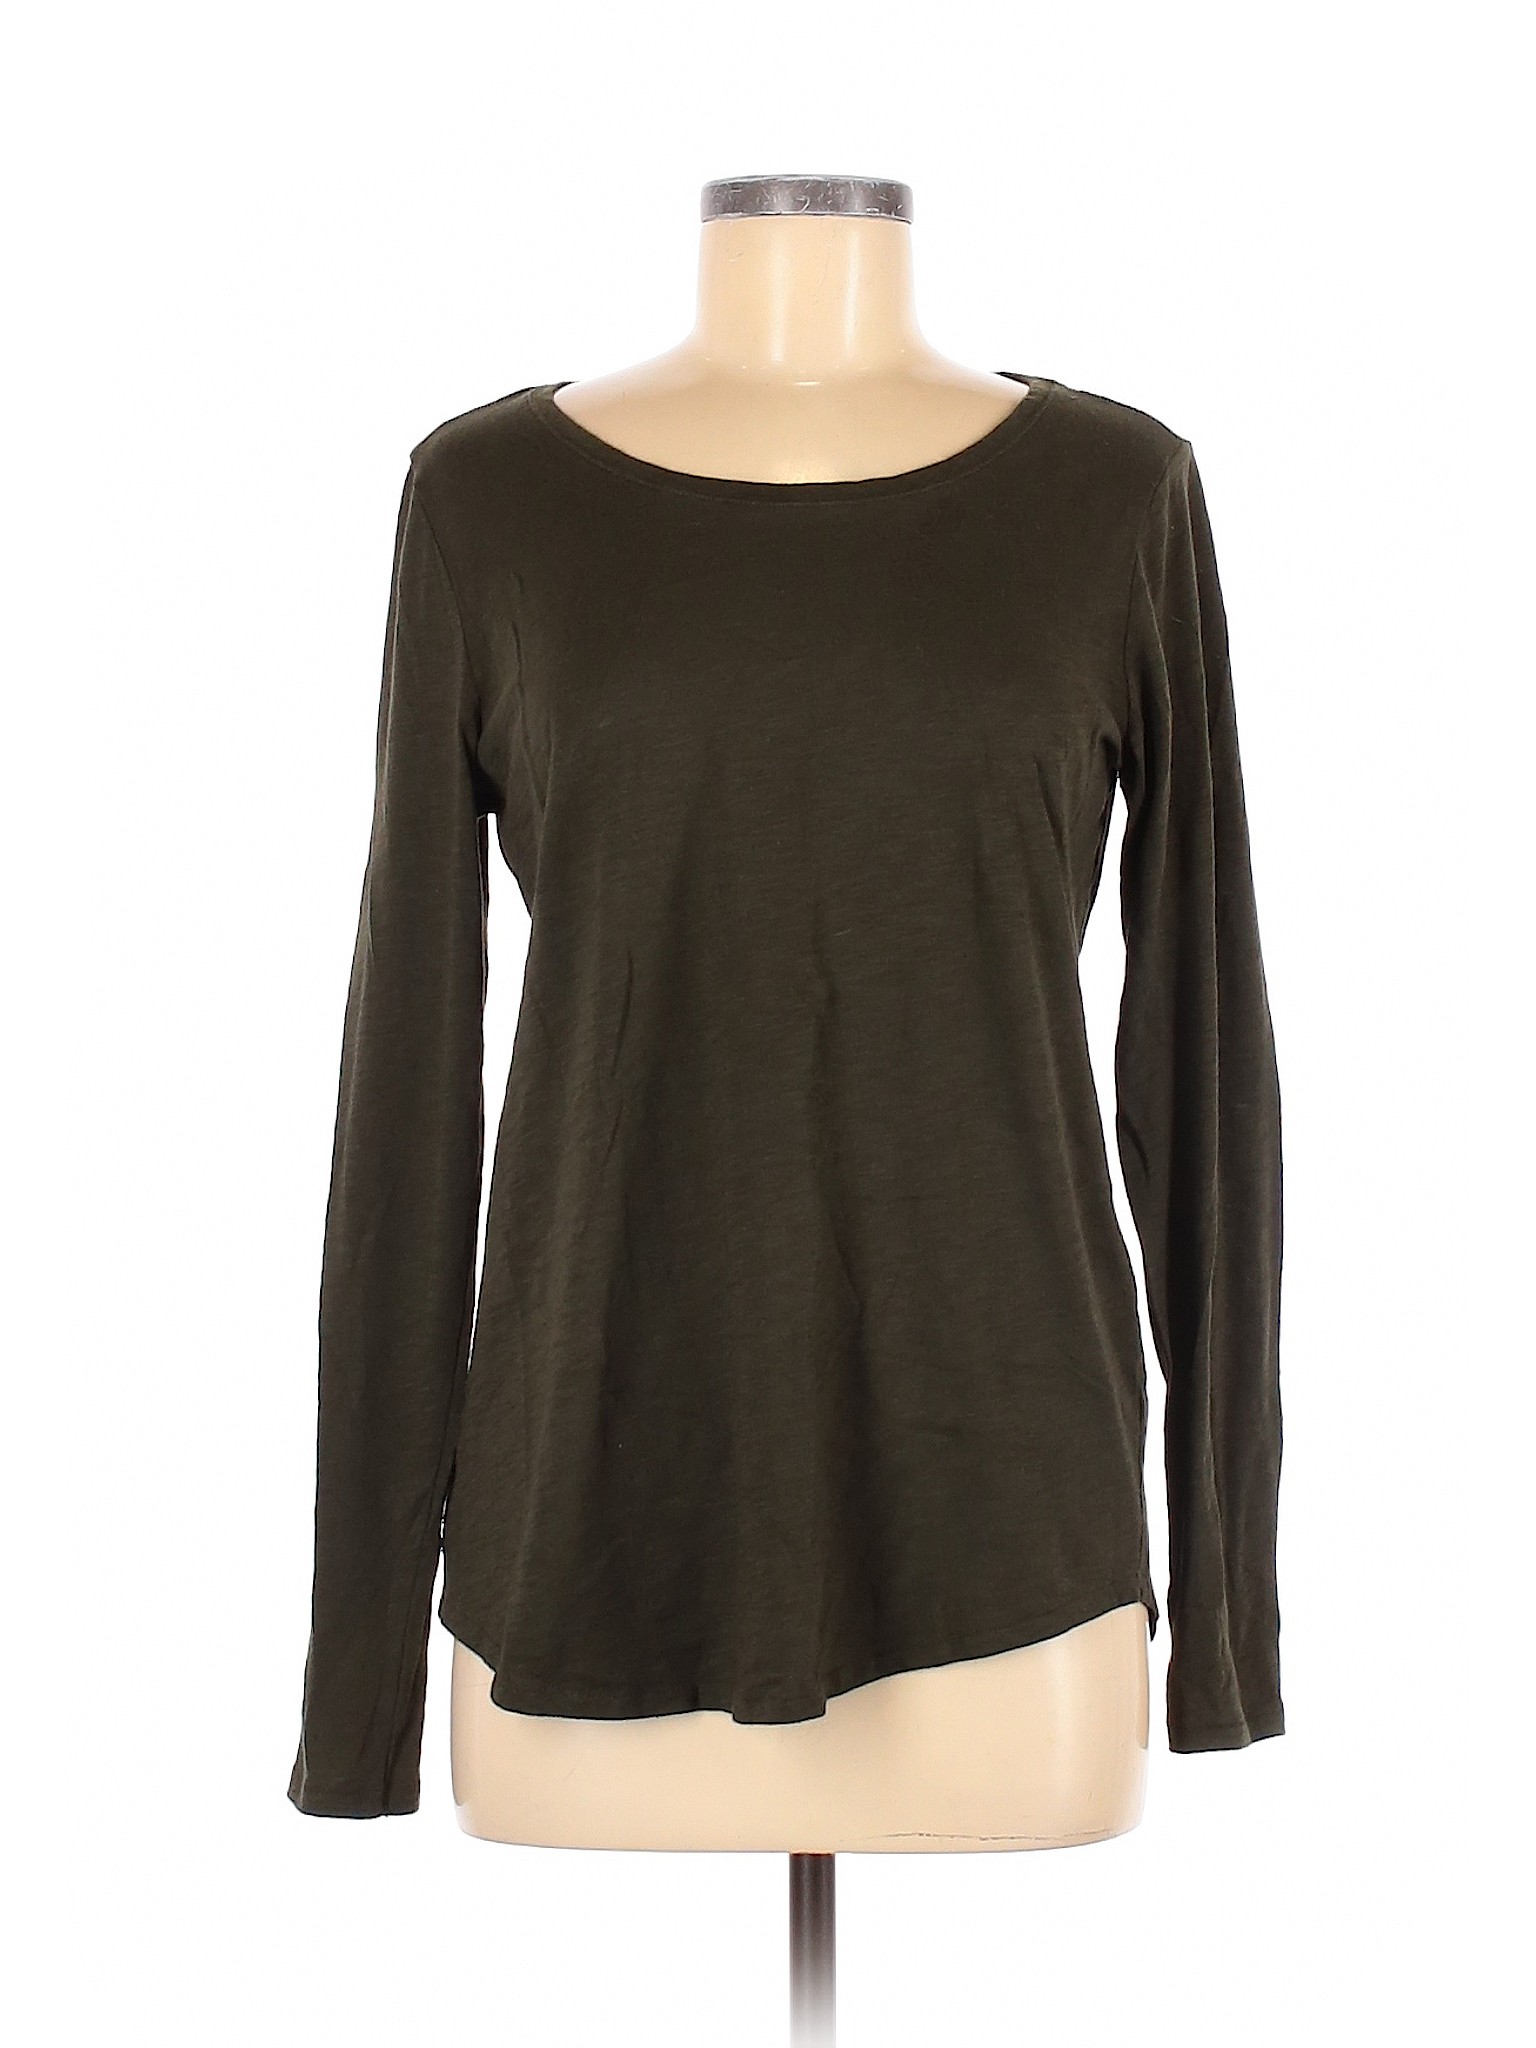 Sonoma Goods for Life Women Green Long Sleeve T-Shirt M | eBay